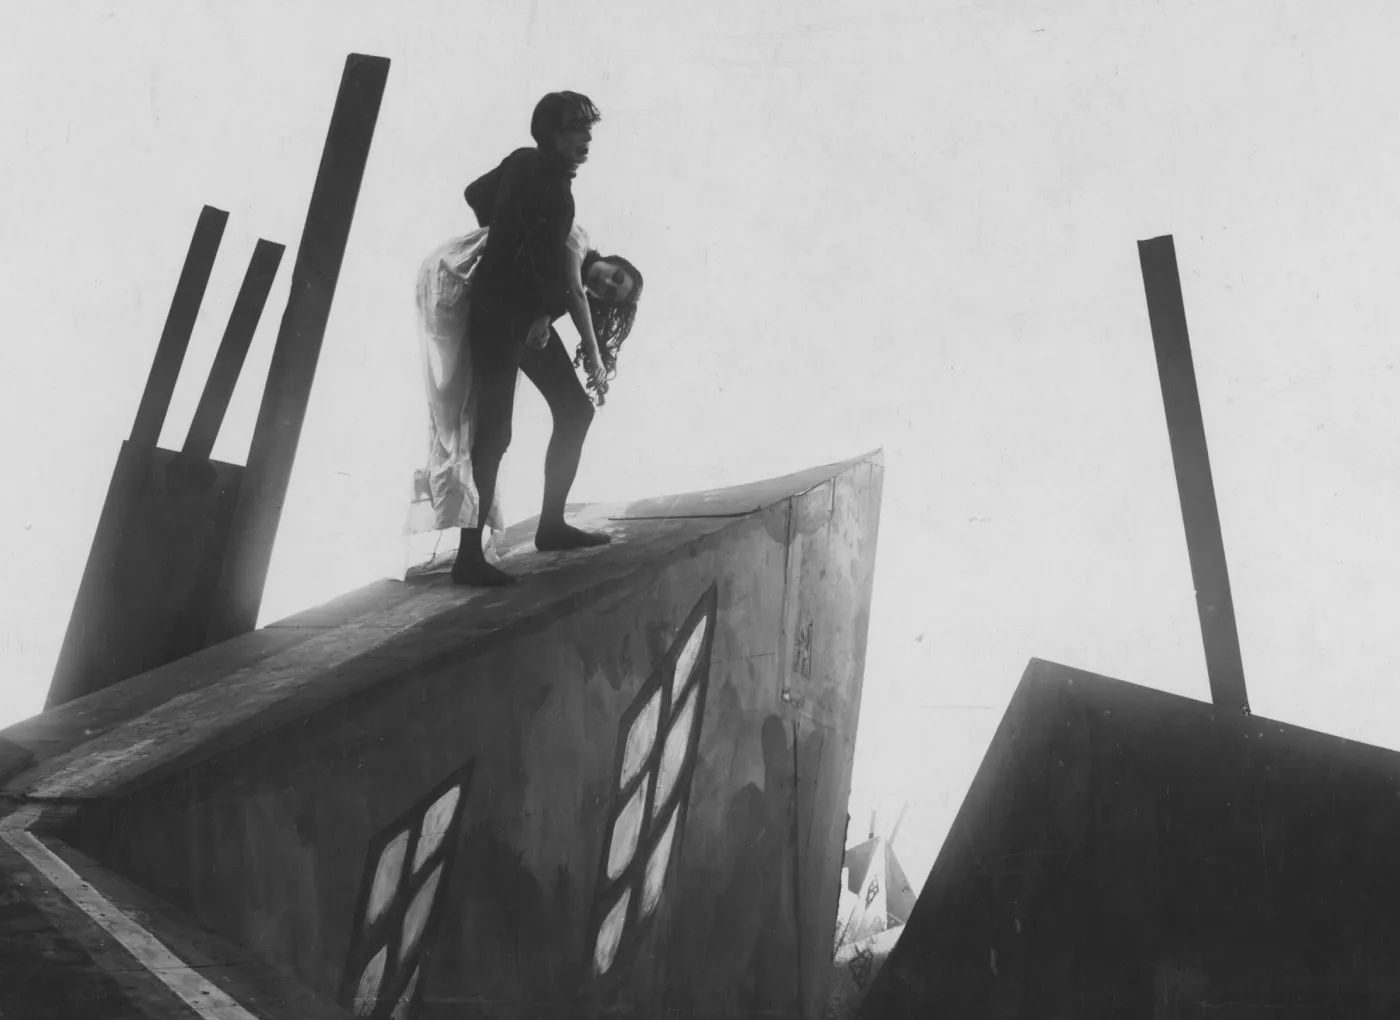 Homem uma mulher enquanto sobe uma rampa. A imagem está em preto e branco e o cenário é composto por formas extremamente agudas e abstratas.